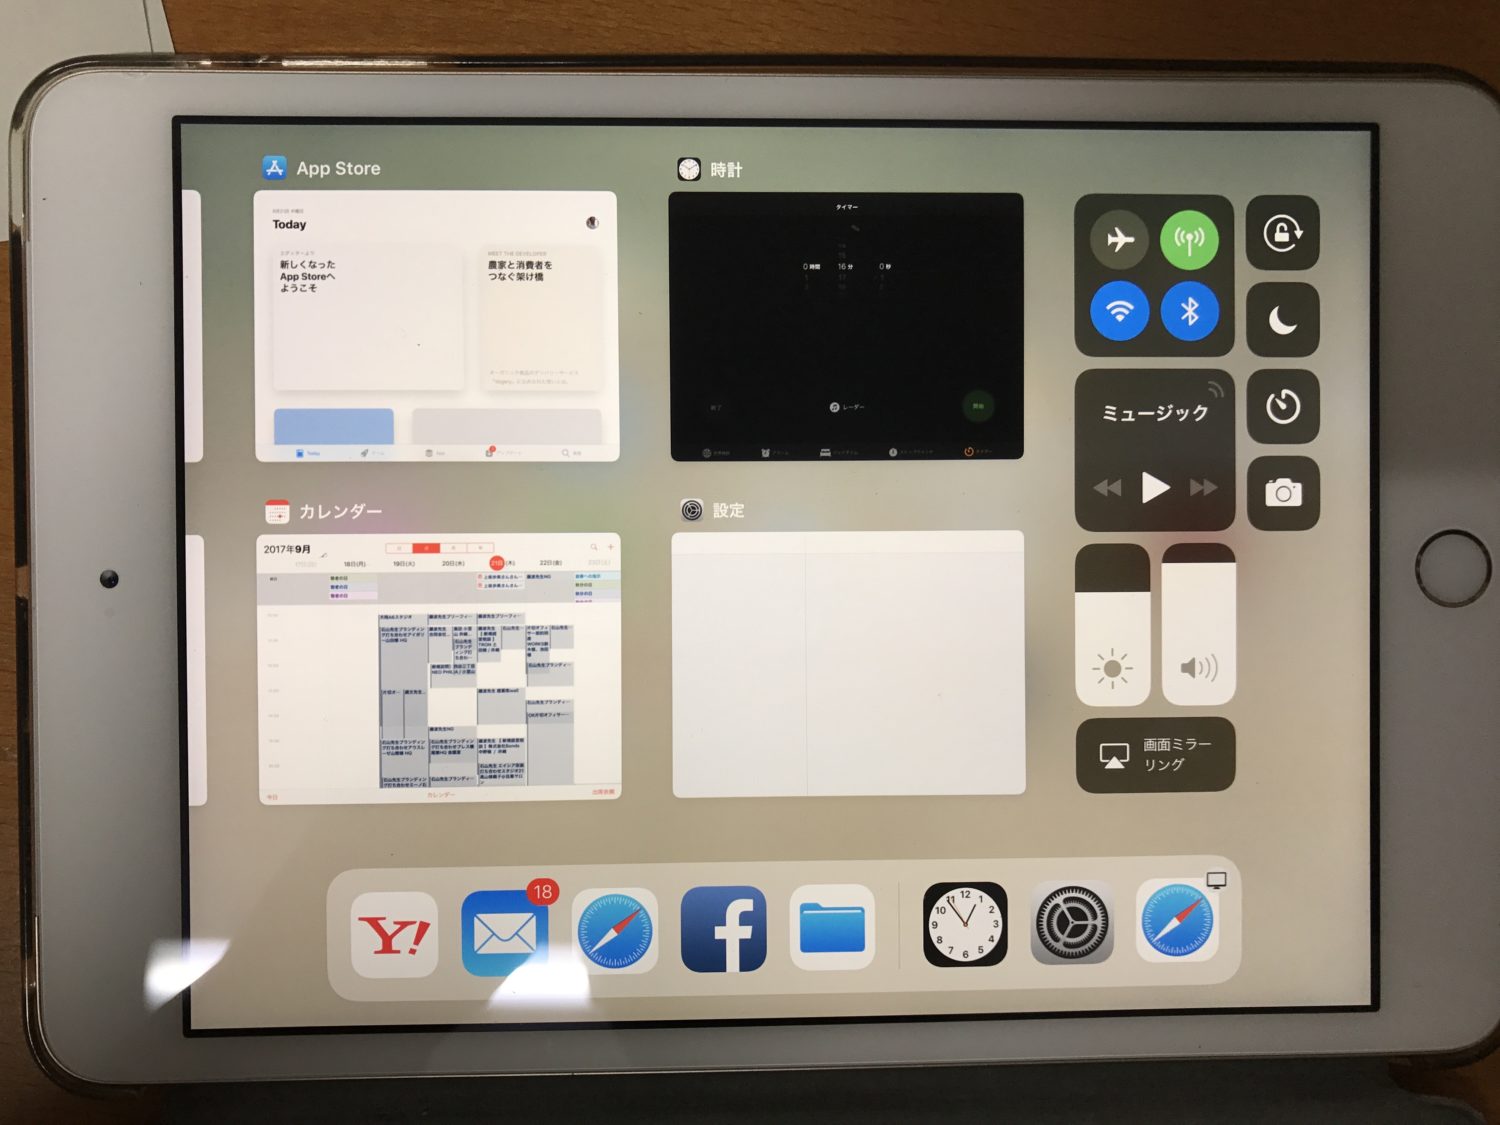 「iOS 11」はiPadを劇的にパワーアップさせるというので、早速やってみました